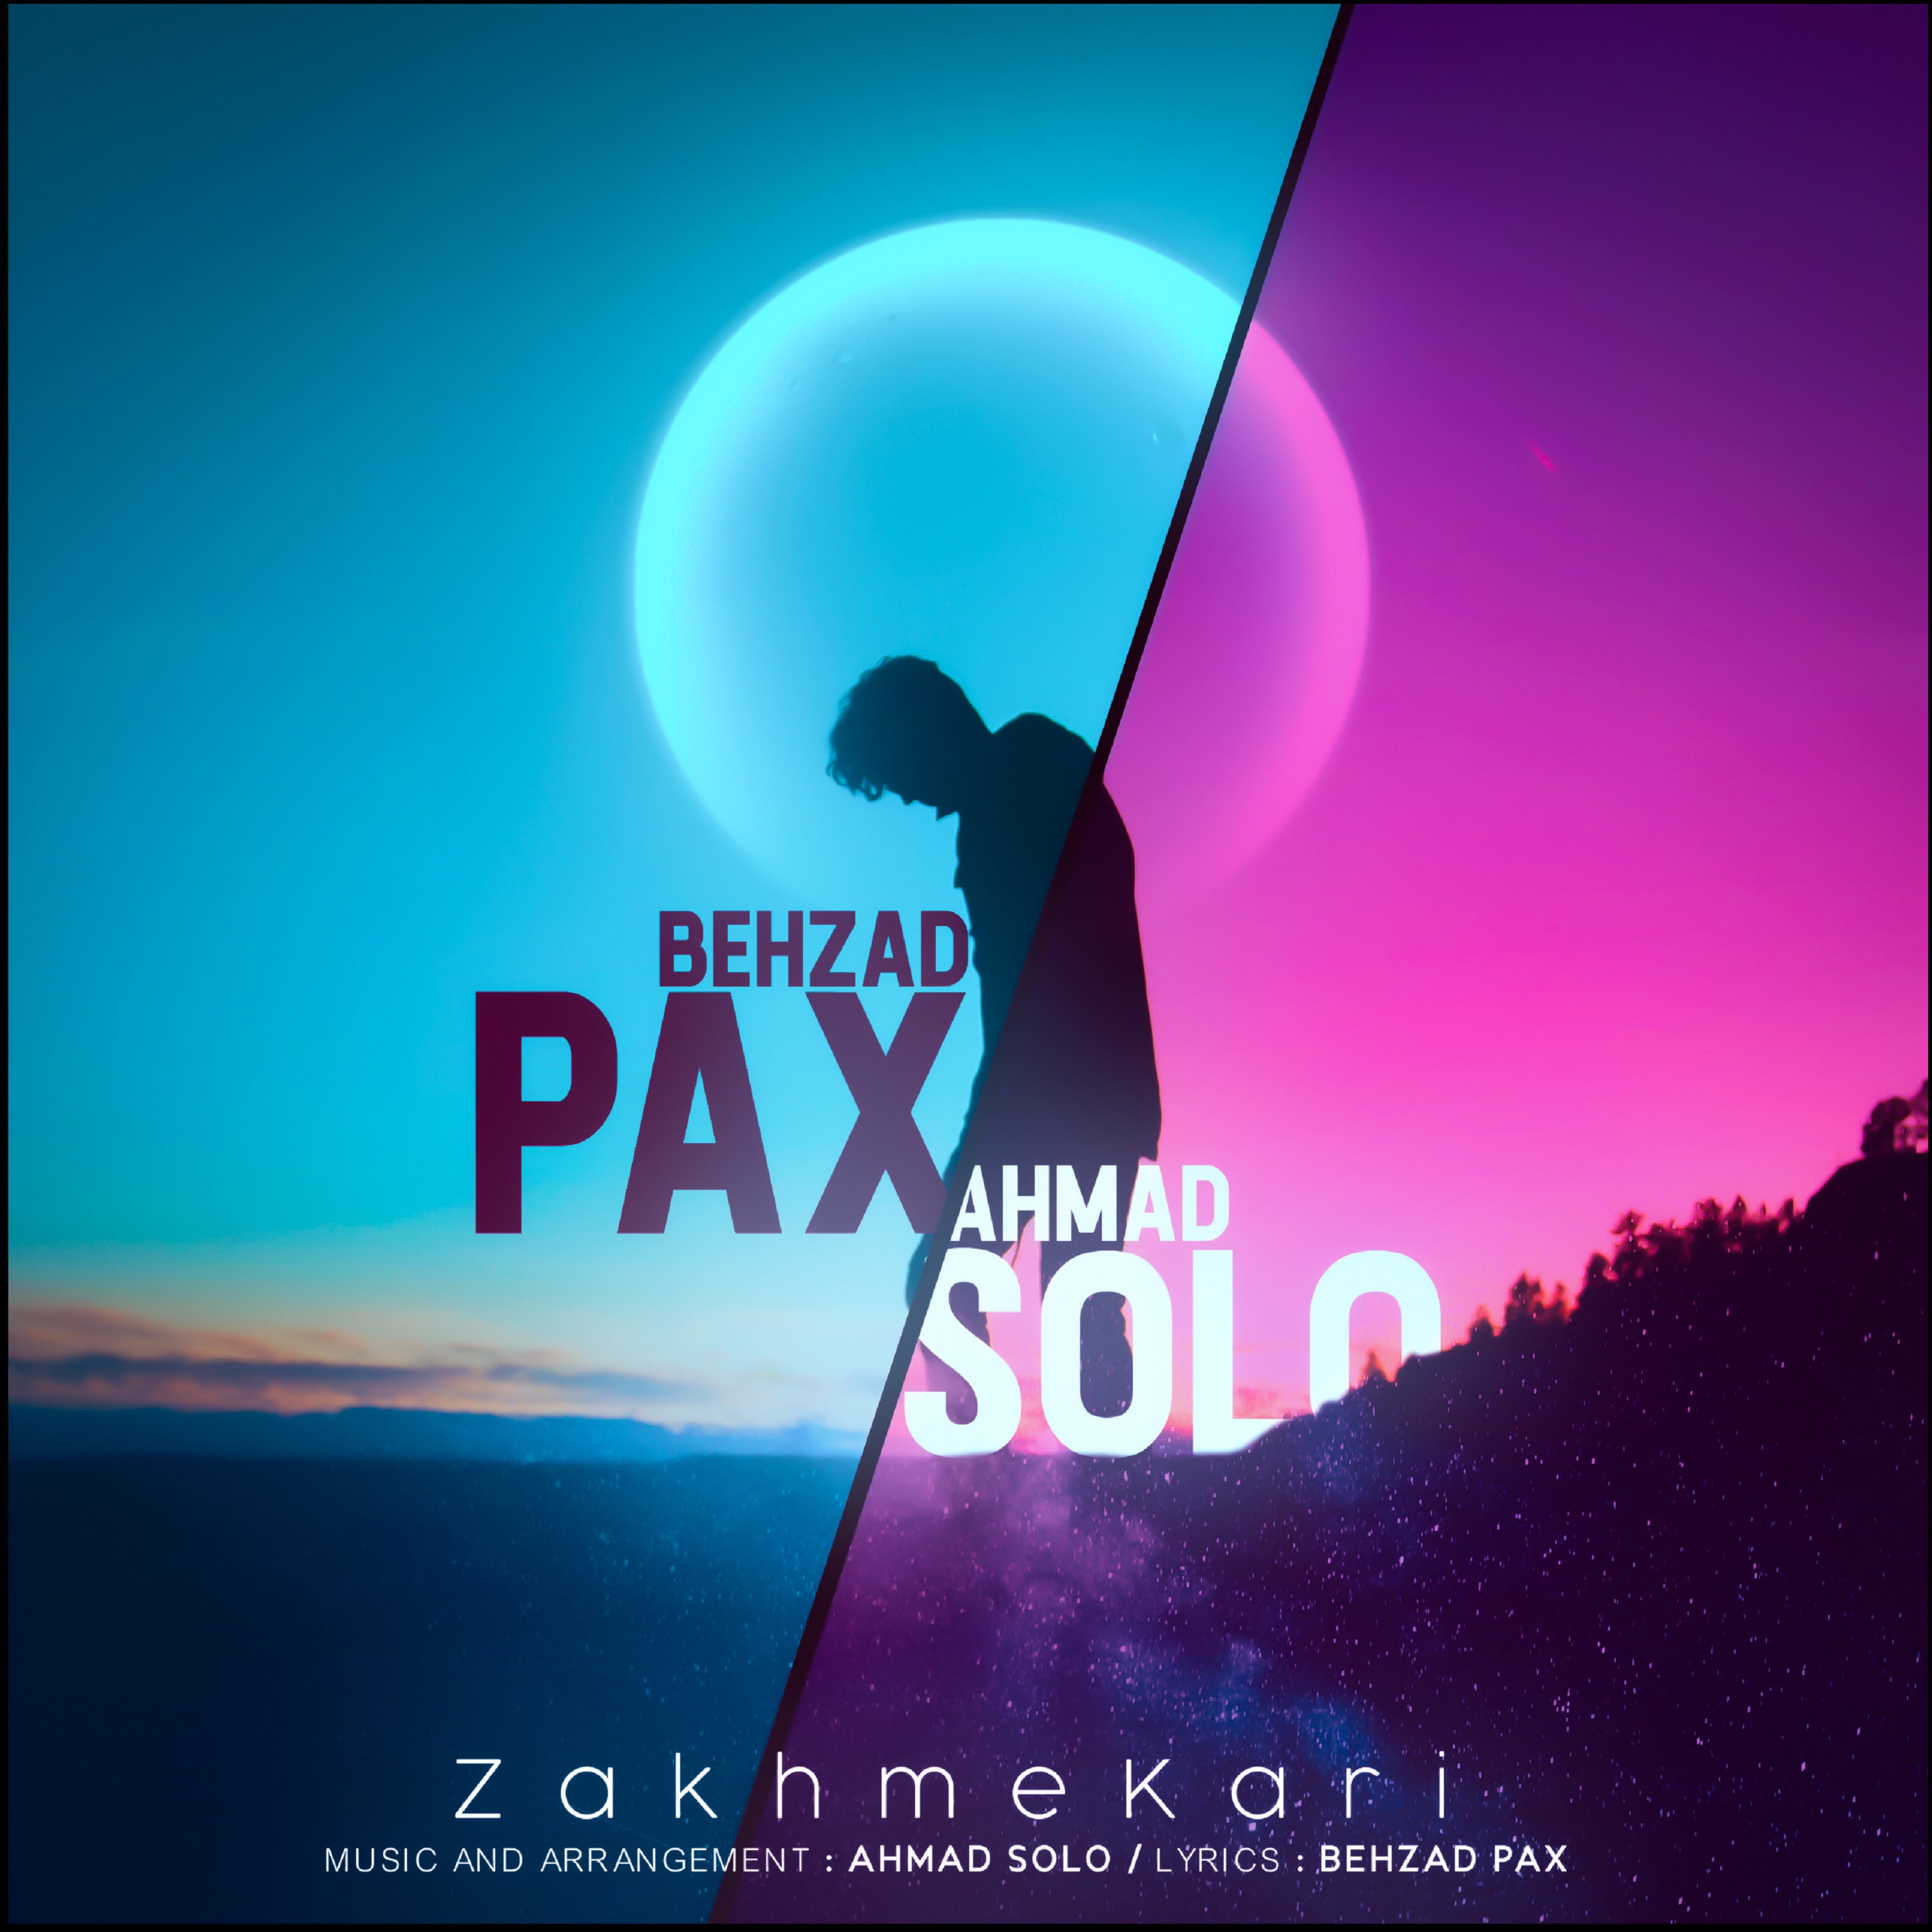  دانلود آهنگ جدید بهزاد پکس و احمد سلو - عشق کوکی | Download New Music By Behzad Pax & Ahmad Solo - Eshghe Kooki